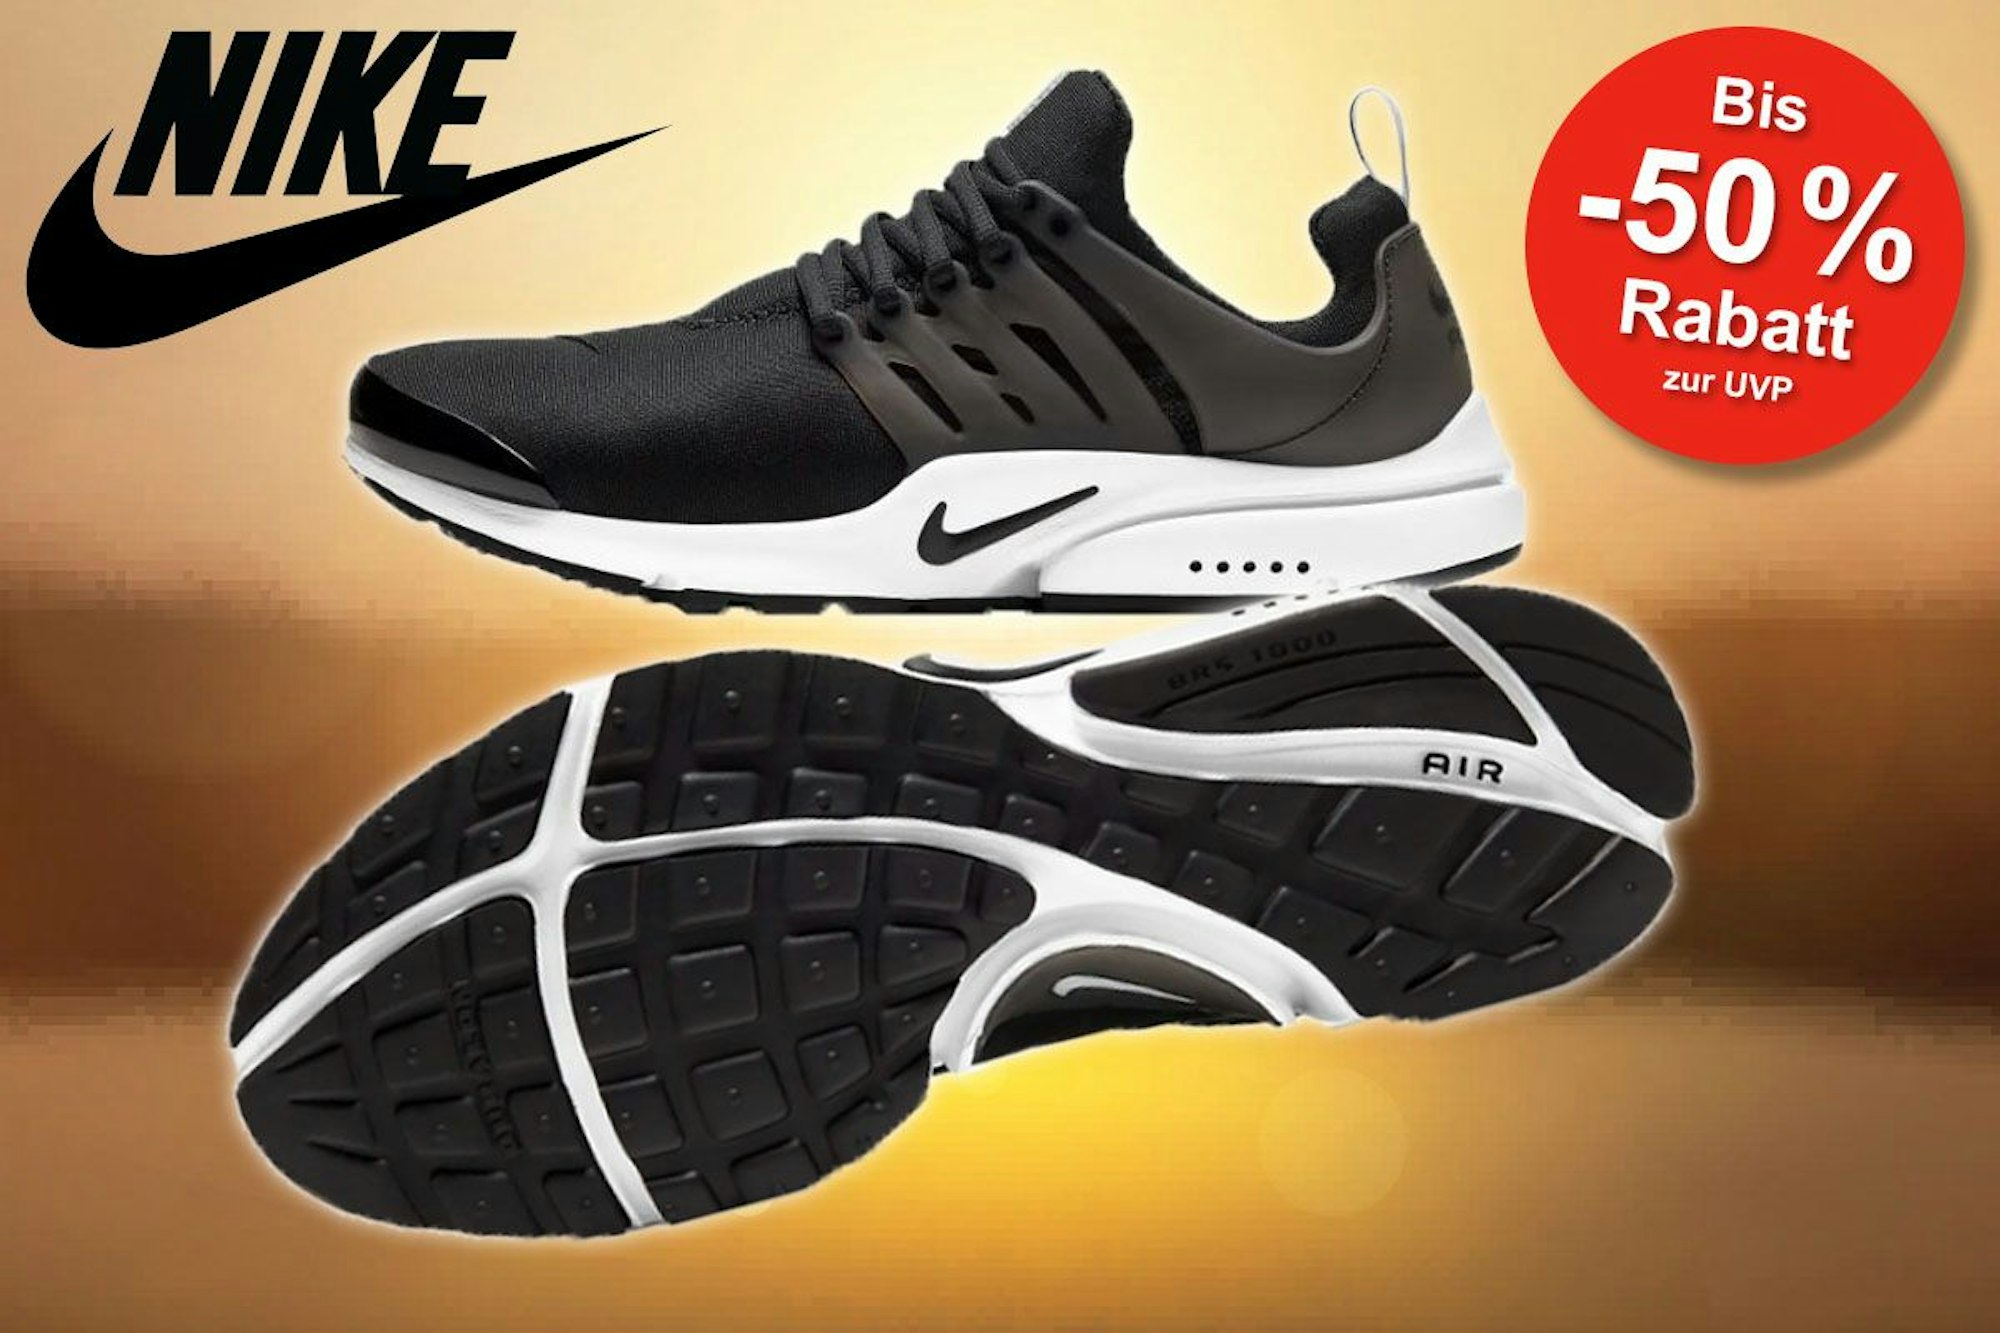 Nike Air Presto Sneaker in Farbe Schwarz-Weiß gezeigt von der Seite und von unten.